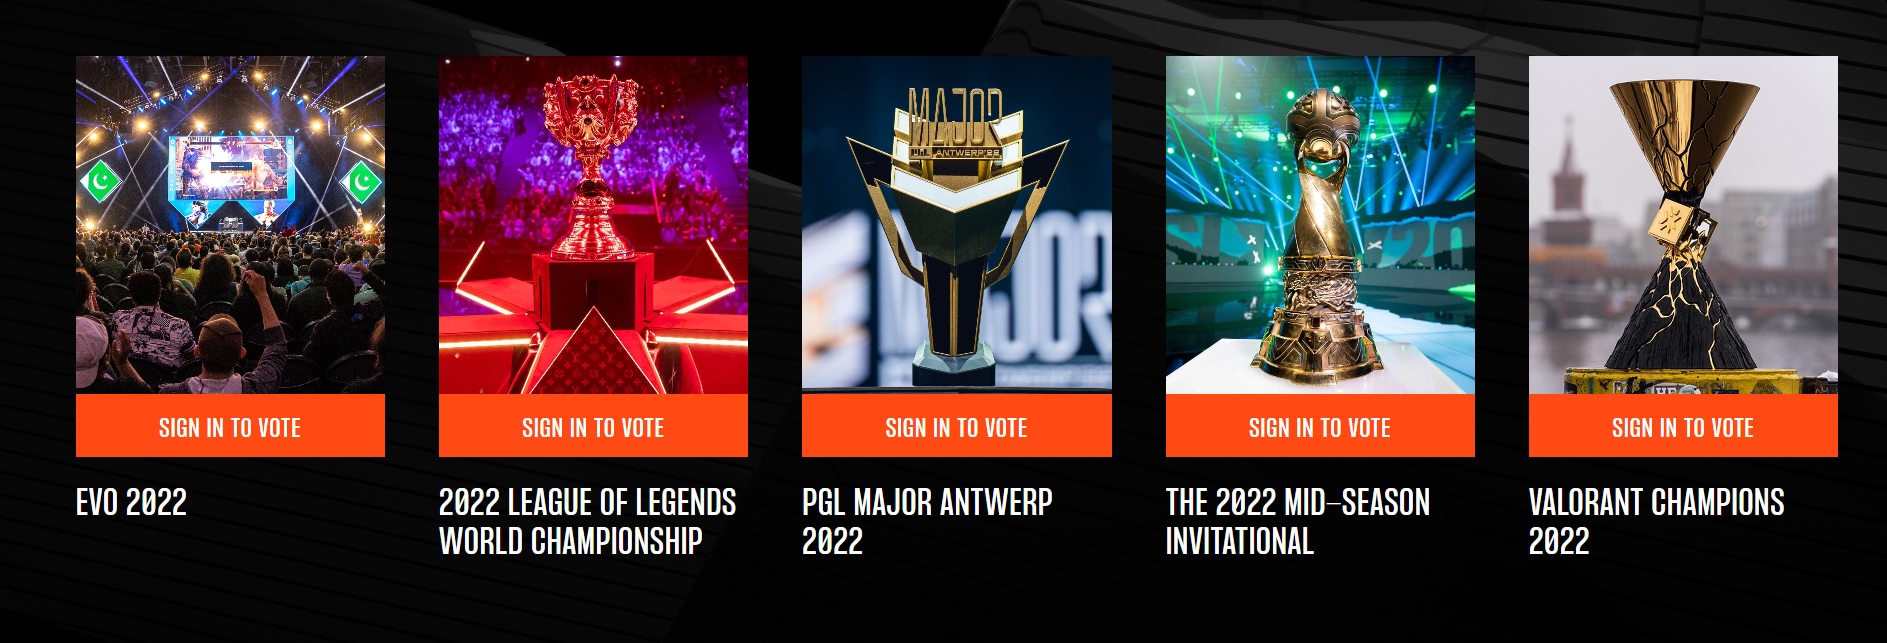 Game Awards 2022: revisa cómo votar por los nominados a mejor videojuego  del año, Ciencia y Tecnología